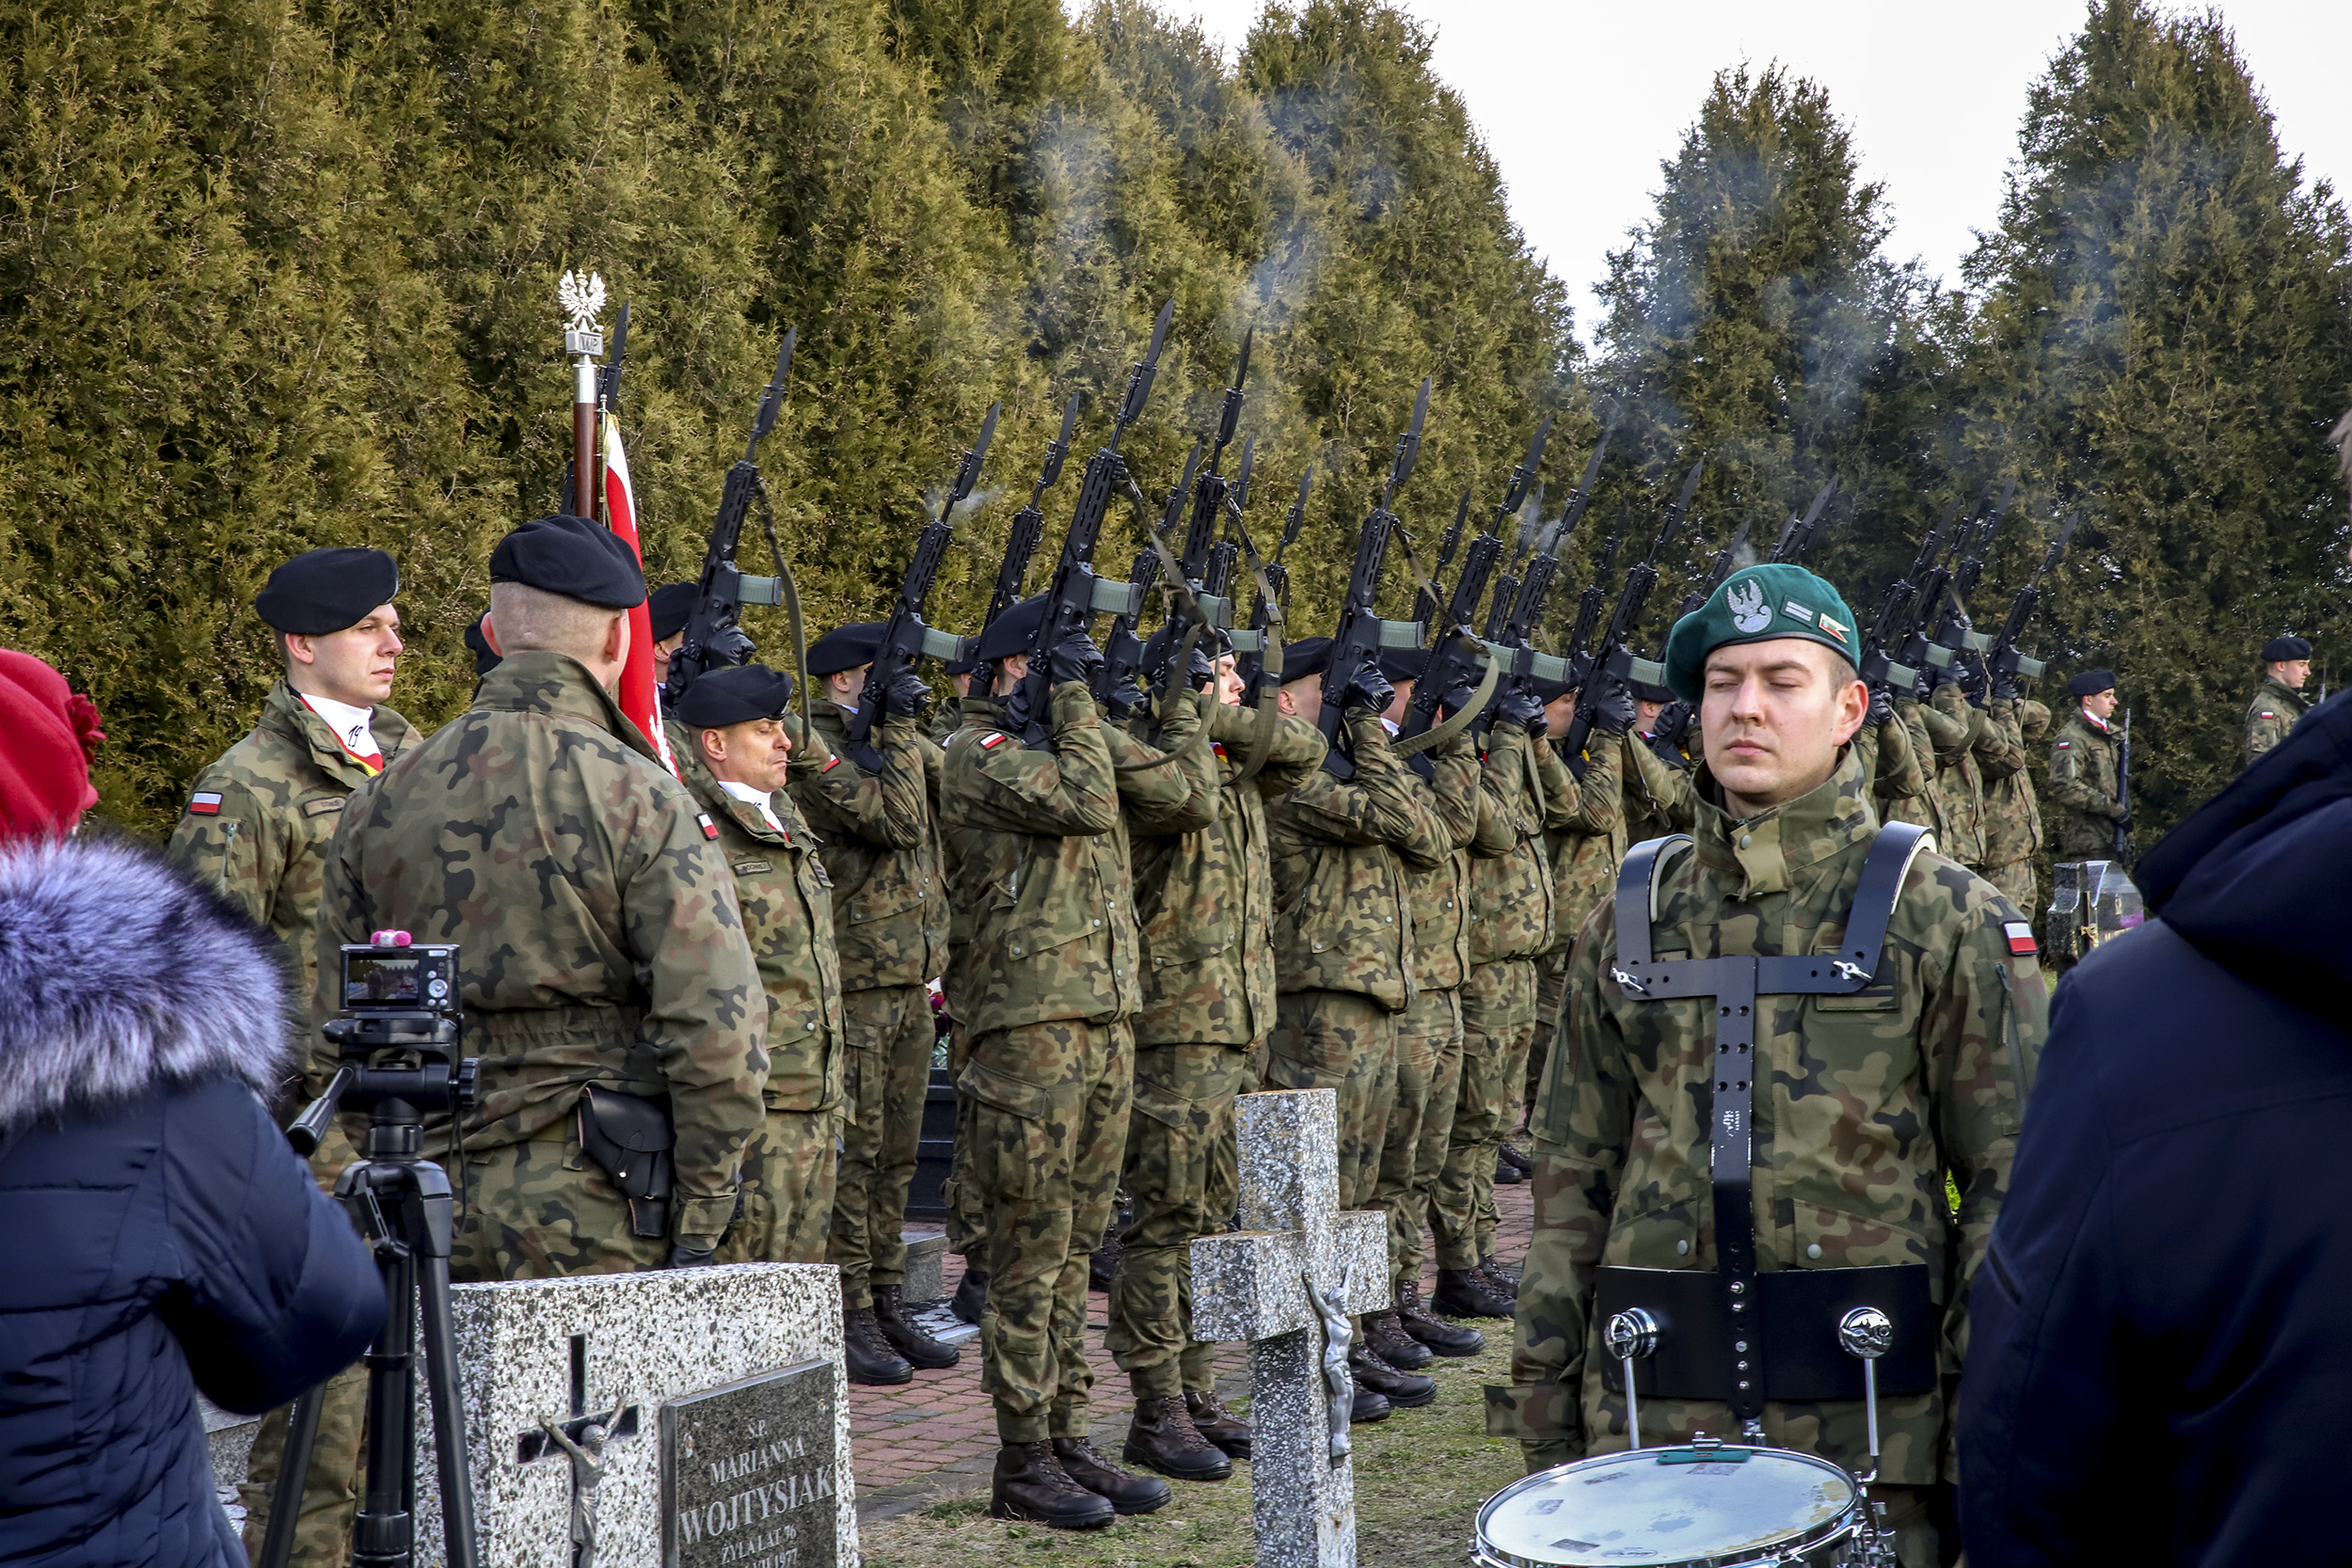 Na zdjęciu salwa honorowa żołnierzy z 19. Lubelskiej Brygady Zmechanizowanej podczas uroczystości na cmentarzu. Żołnierze trzymają uniesione w górę karabiny, z których unosi się dym po wystrzale.